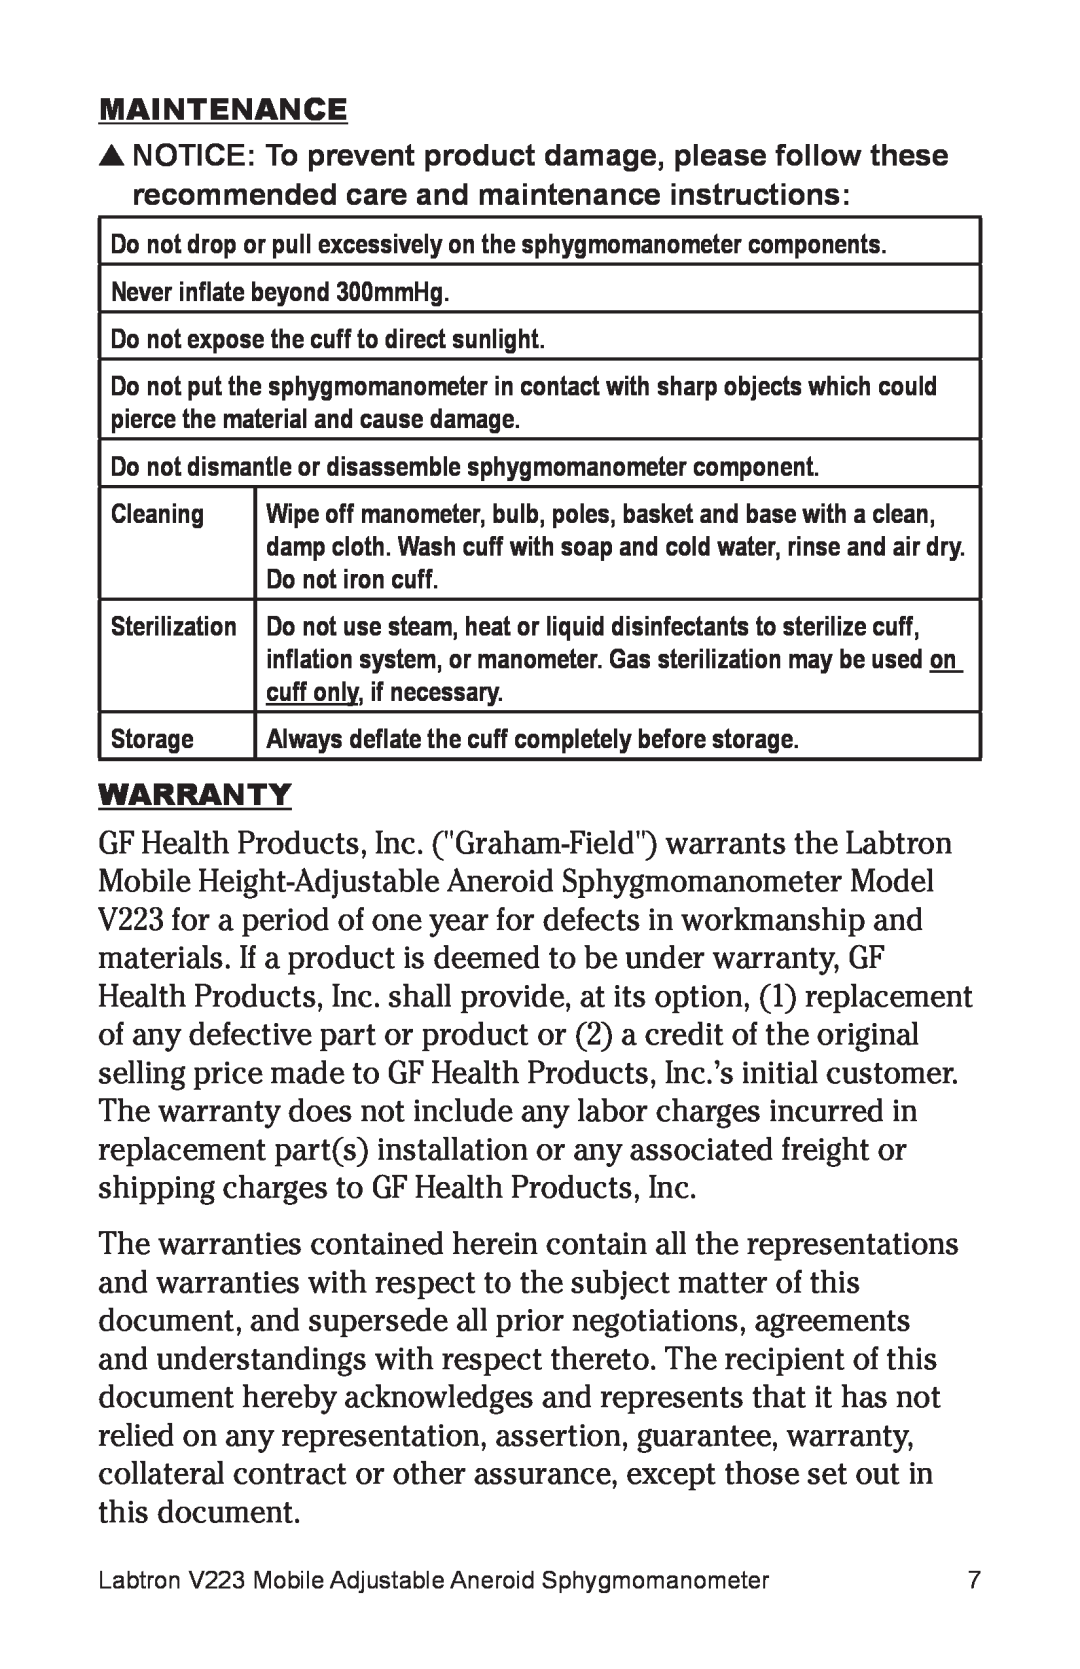 Graham Field V223 user manual Maintenance, Warranty 